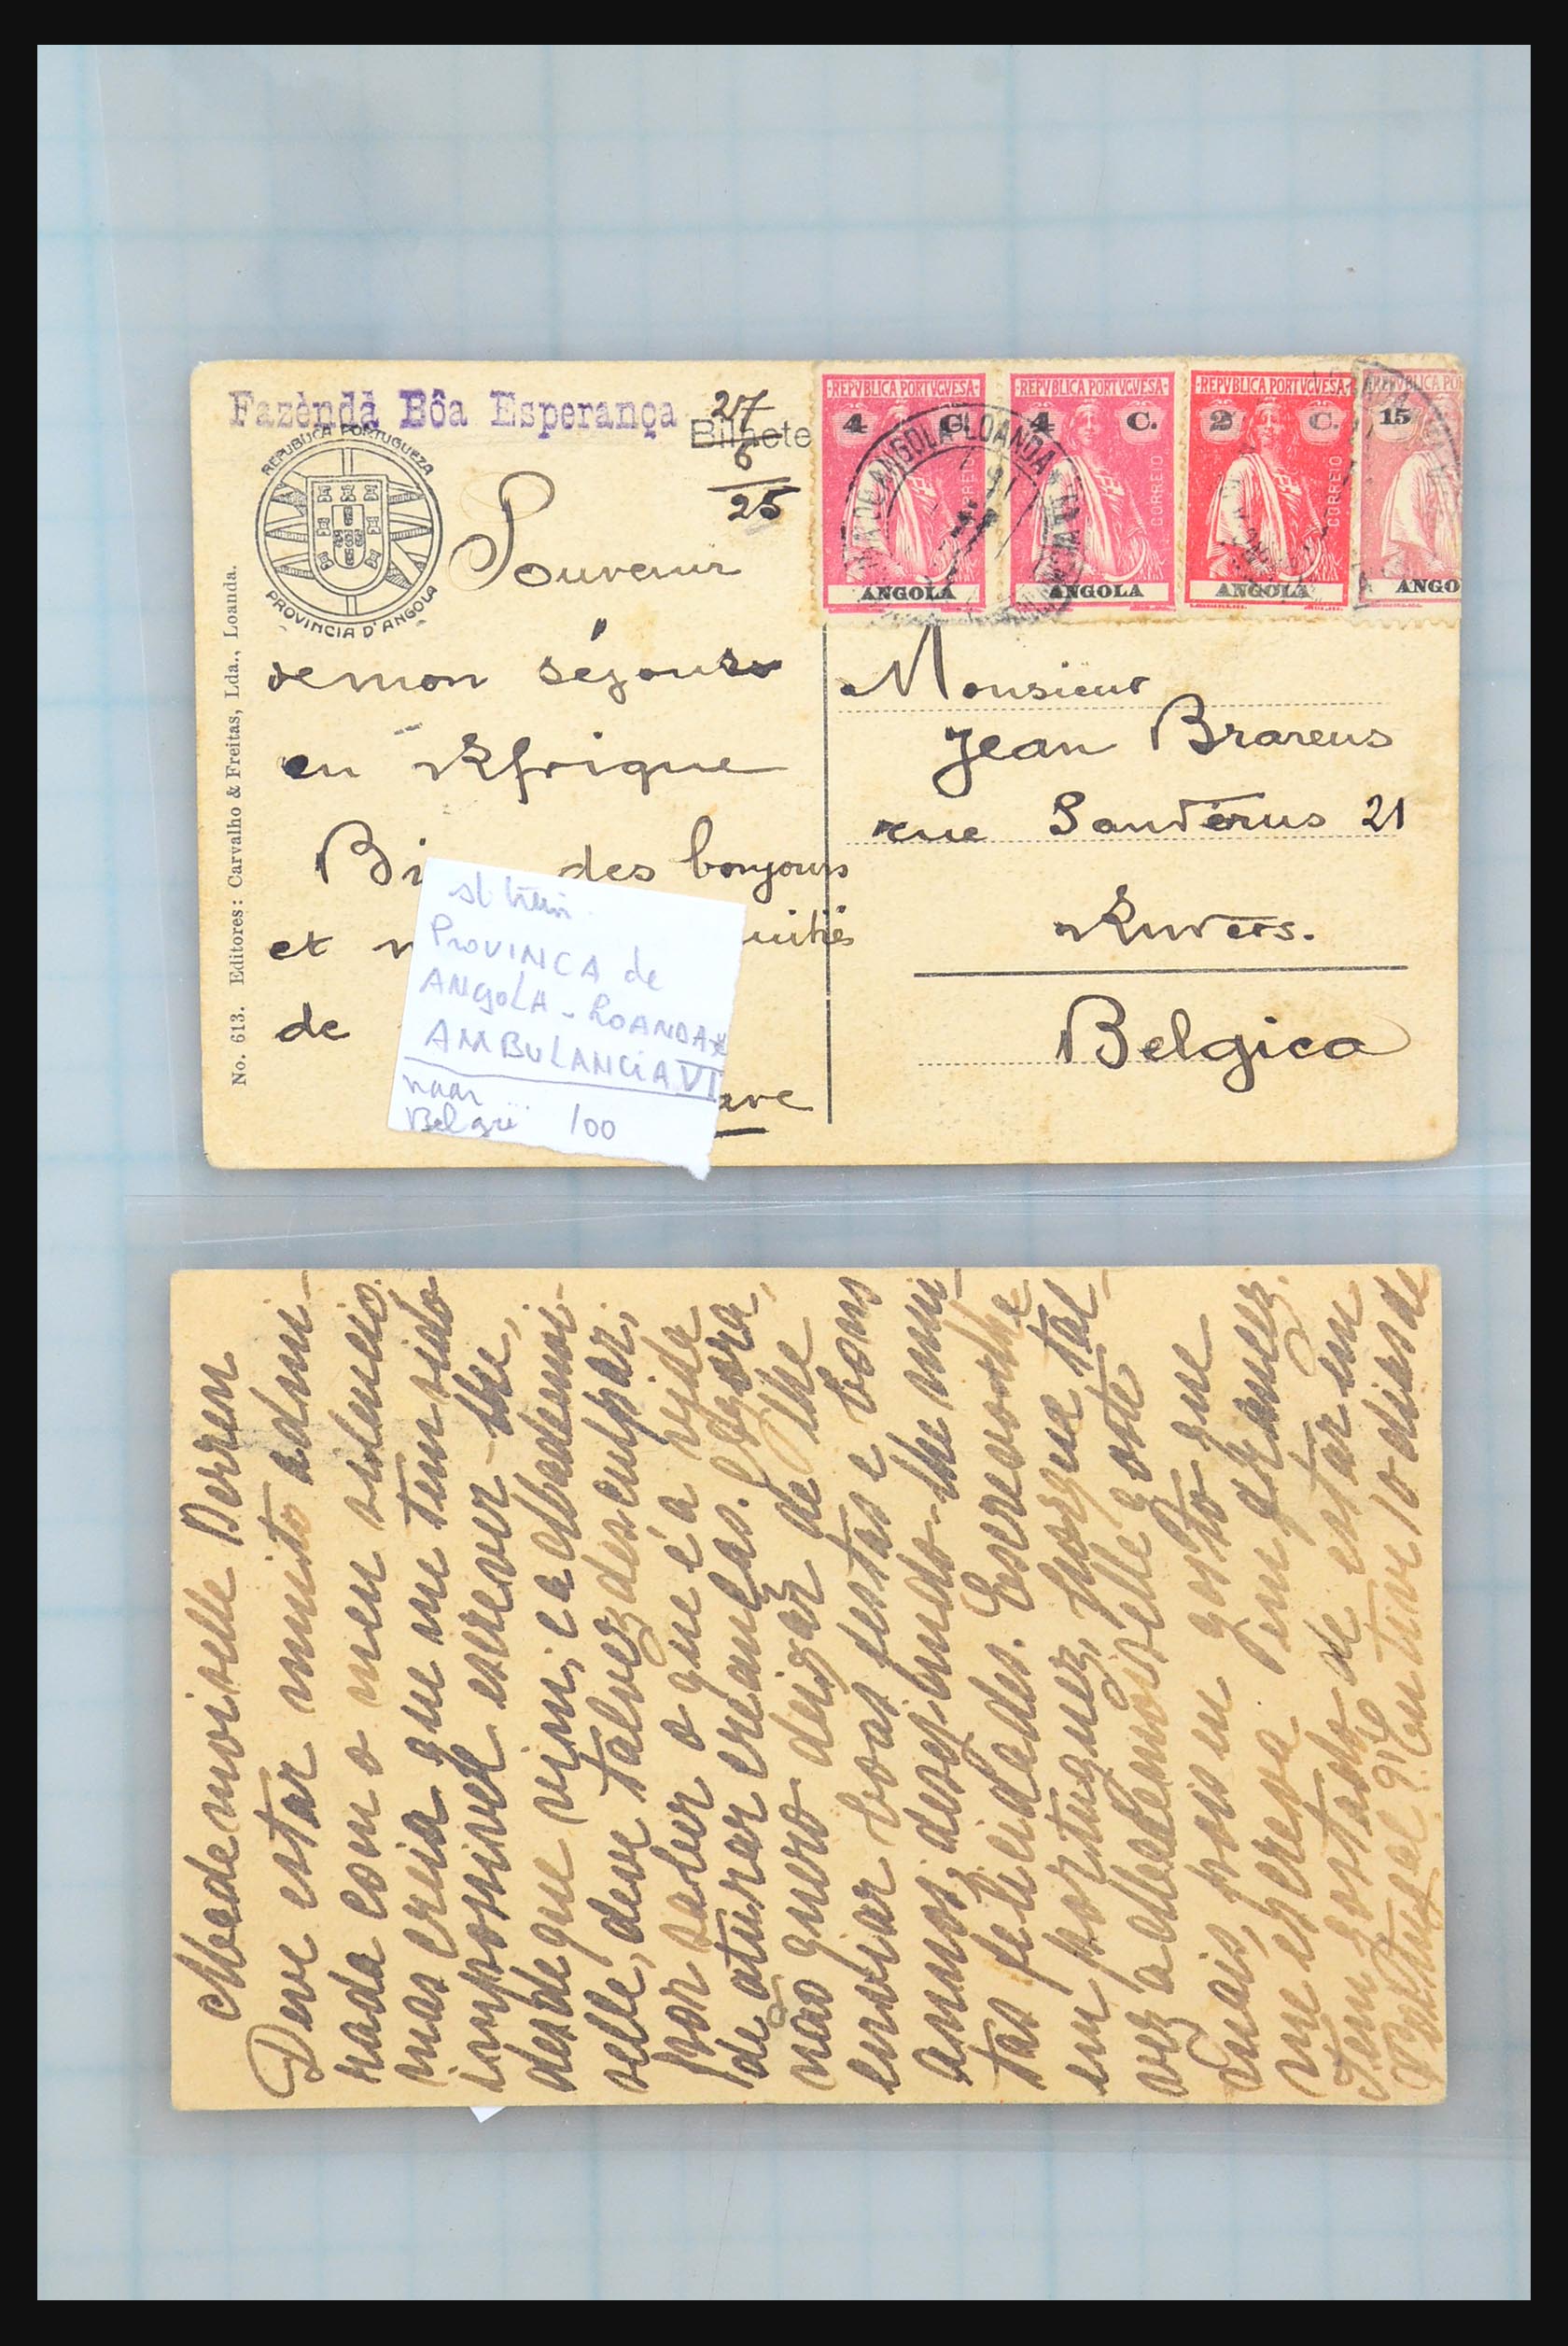 31358 255 - 31358 Portugal/Luxemburg/Griekenland brieven 1880-1960.